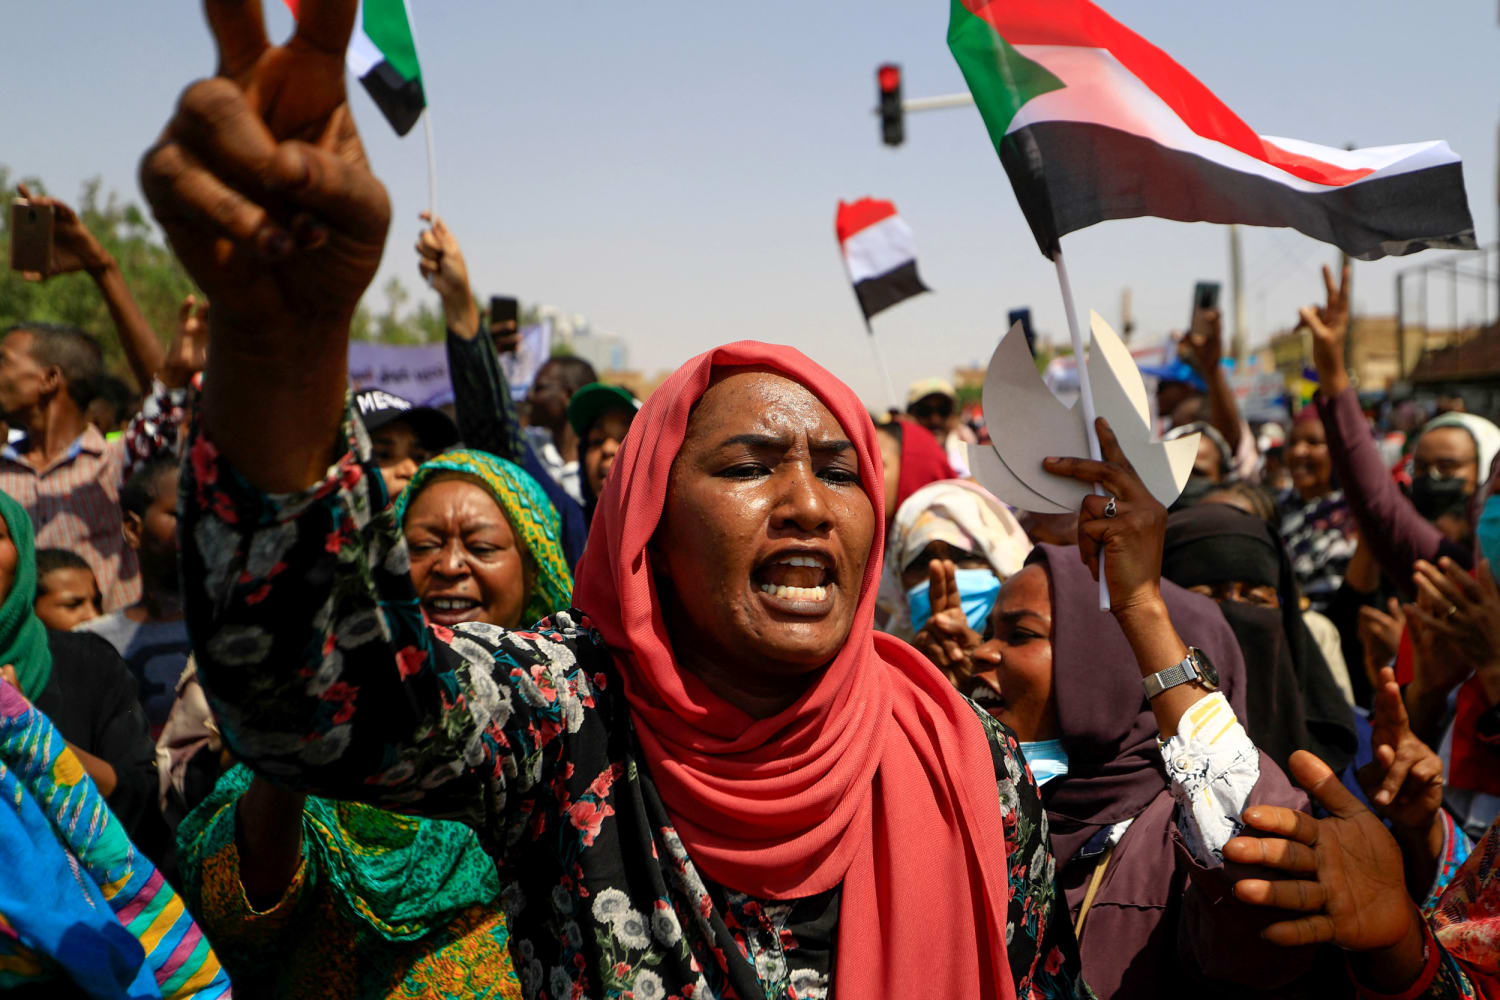 Economic hardship, quashed democratic hopes: What led up to Sudan’s coup